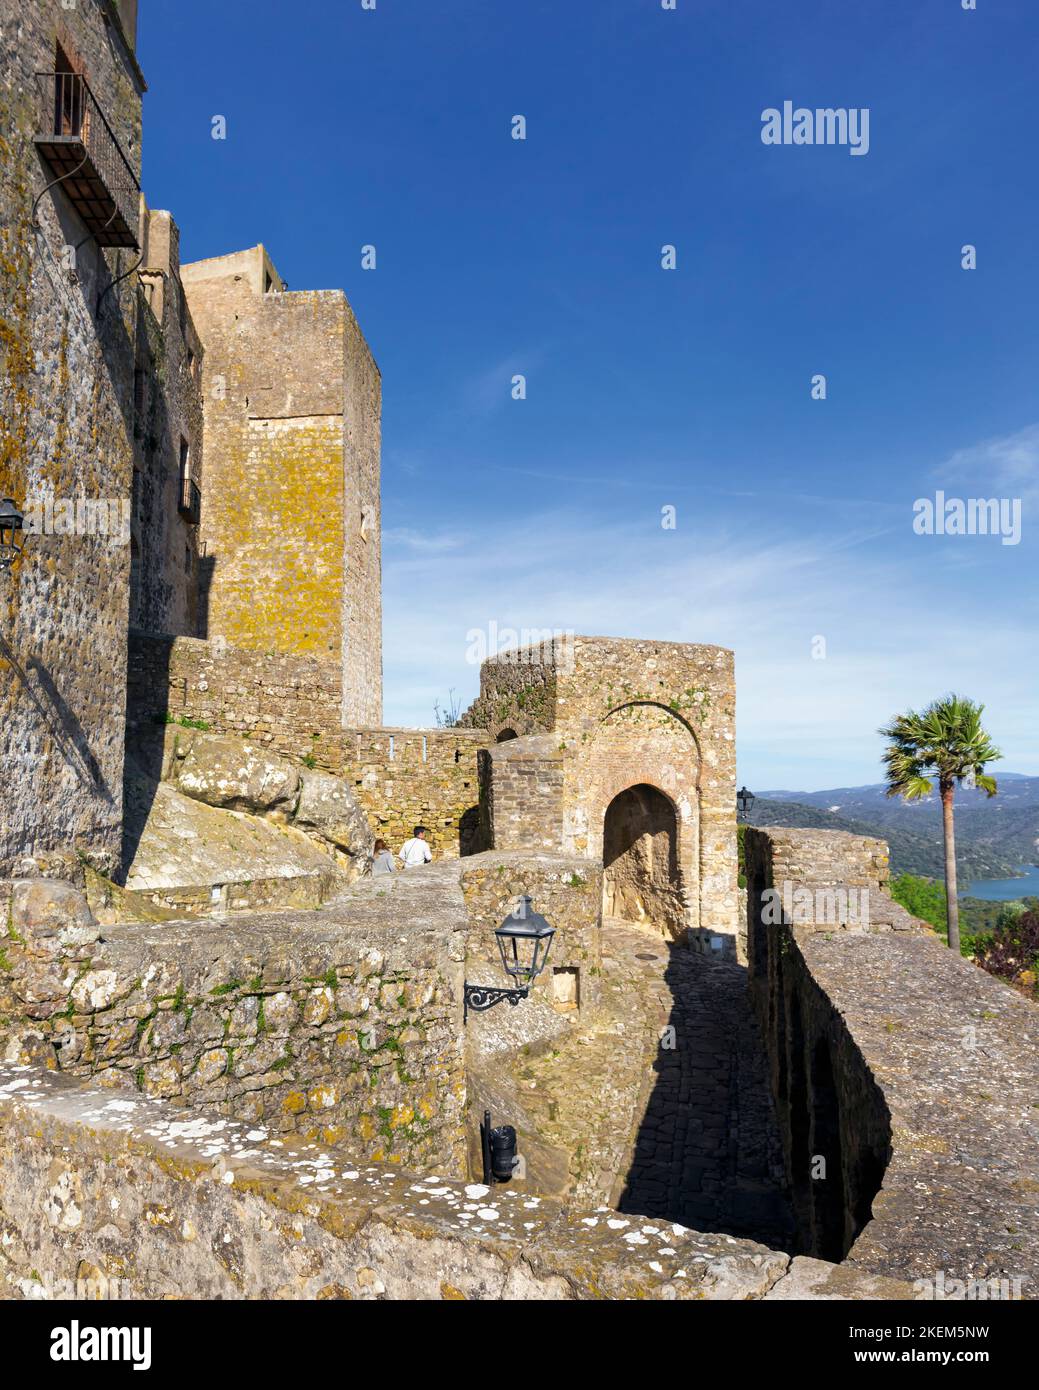 Castellar de la Frontera, Provincia di Cadice, Andalusia, Spagna meridionale. Ingresso a Villa Fortaleza, o città fortificata. La fortezza risale al 1 Foto Stock